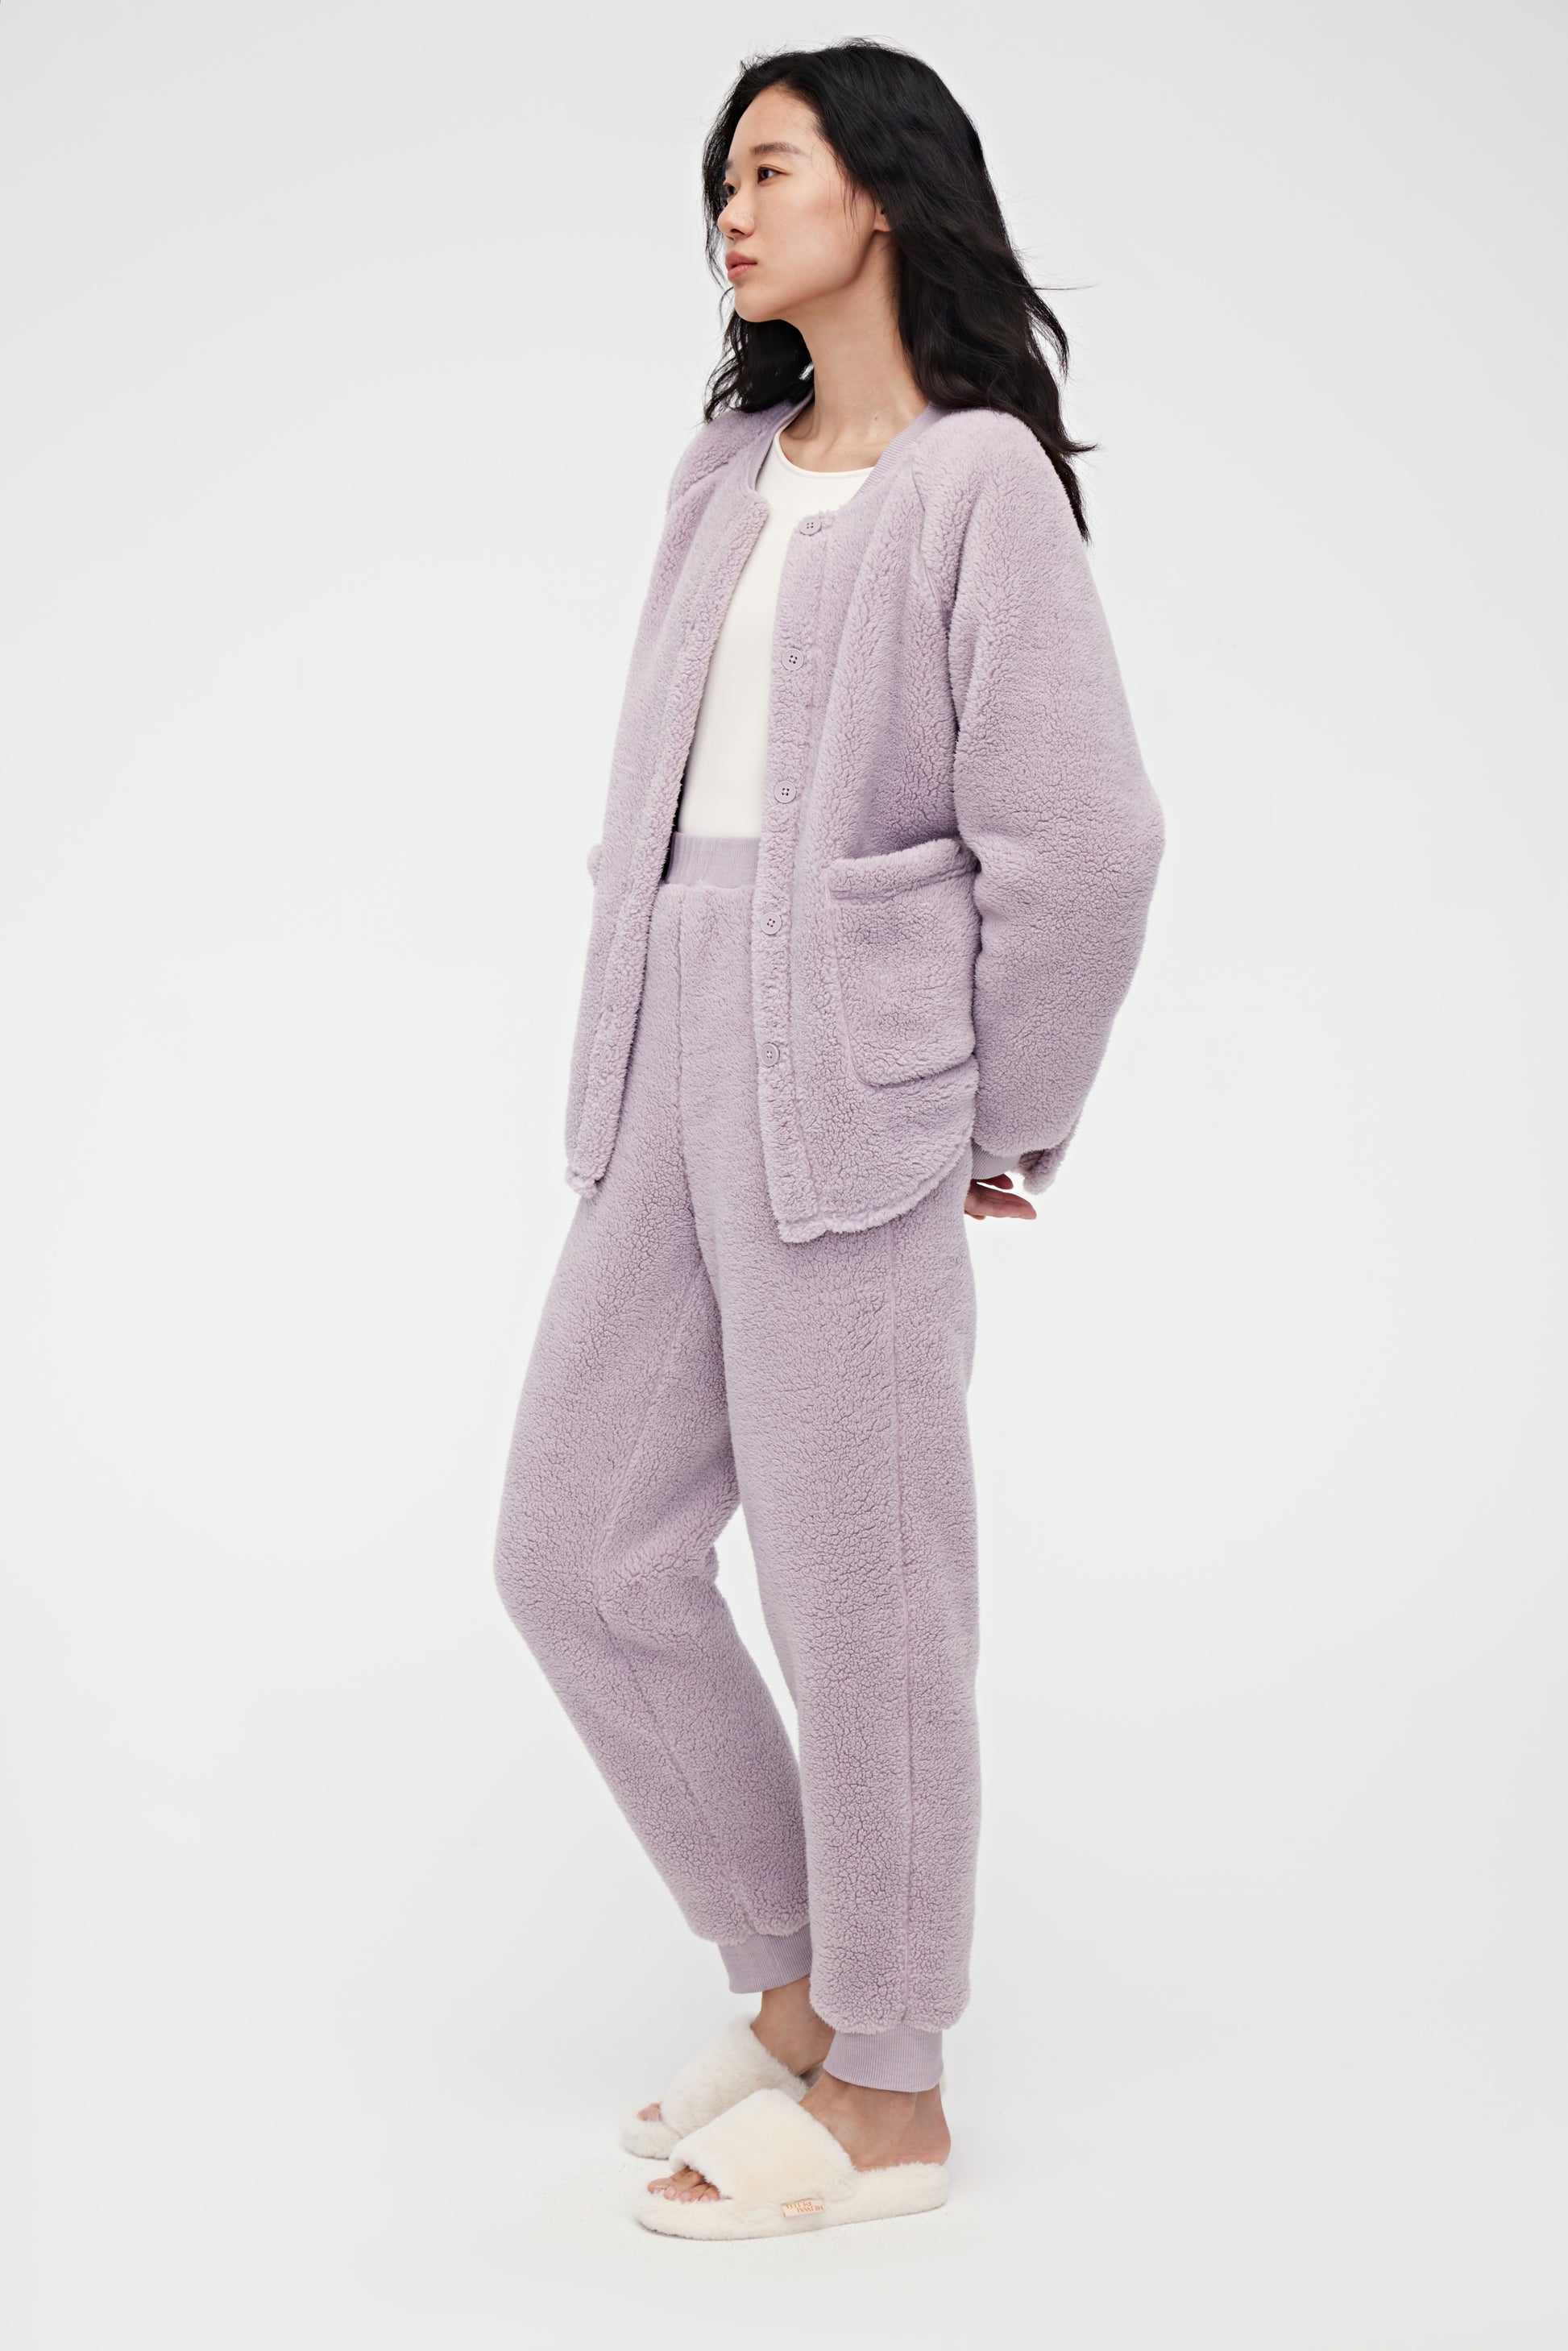 Rockia Fuzzy Sherpa Fleece Pajamas Set for Women Winter Long Sleeve Plush  Hoodies 2 Piece Sleepwear Loungewear Sleepwear Wine at  Women's  Clothing store